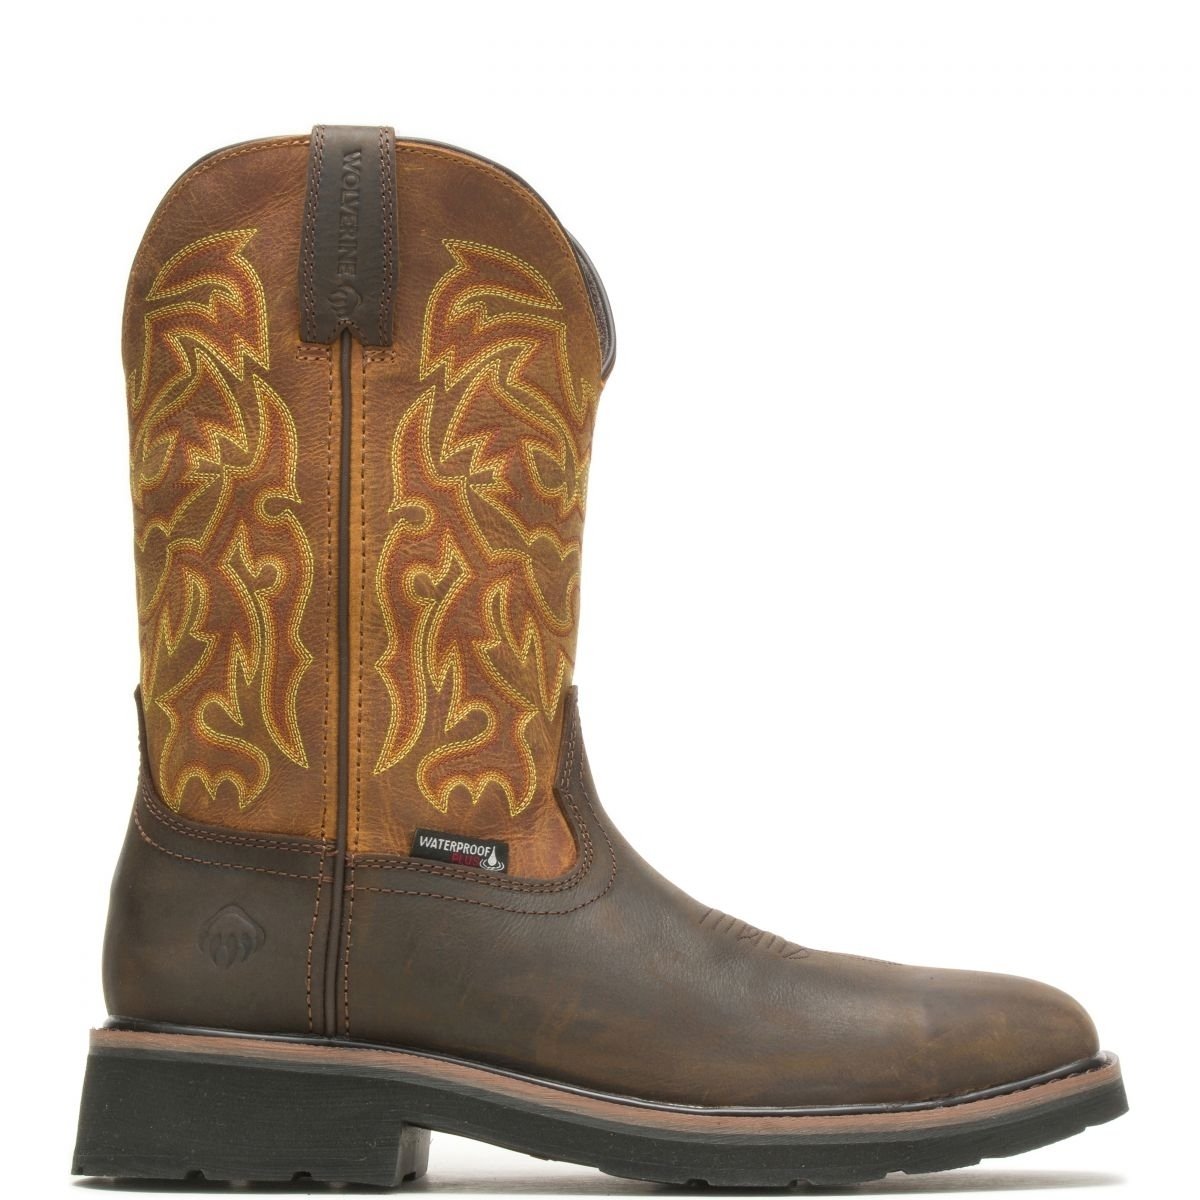 WOLVERINE Men's Rancher 10 Steel Toe Waterproof Work Boot Golden/Brown - W221029 GOLDEN/BROWN - GOLDEN/BROWN, 12-EW